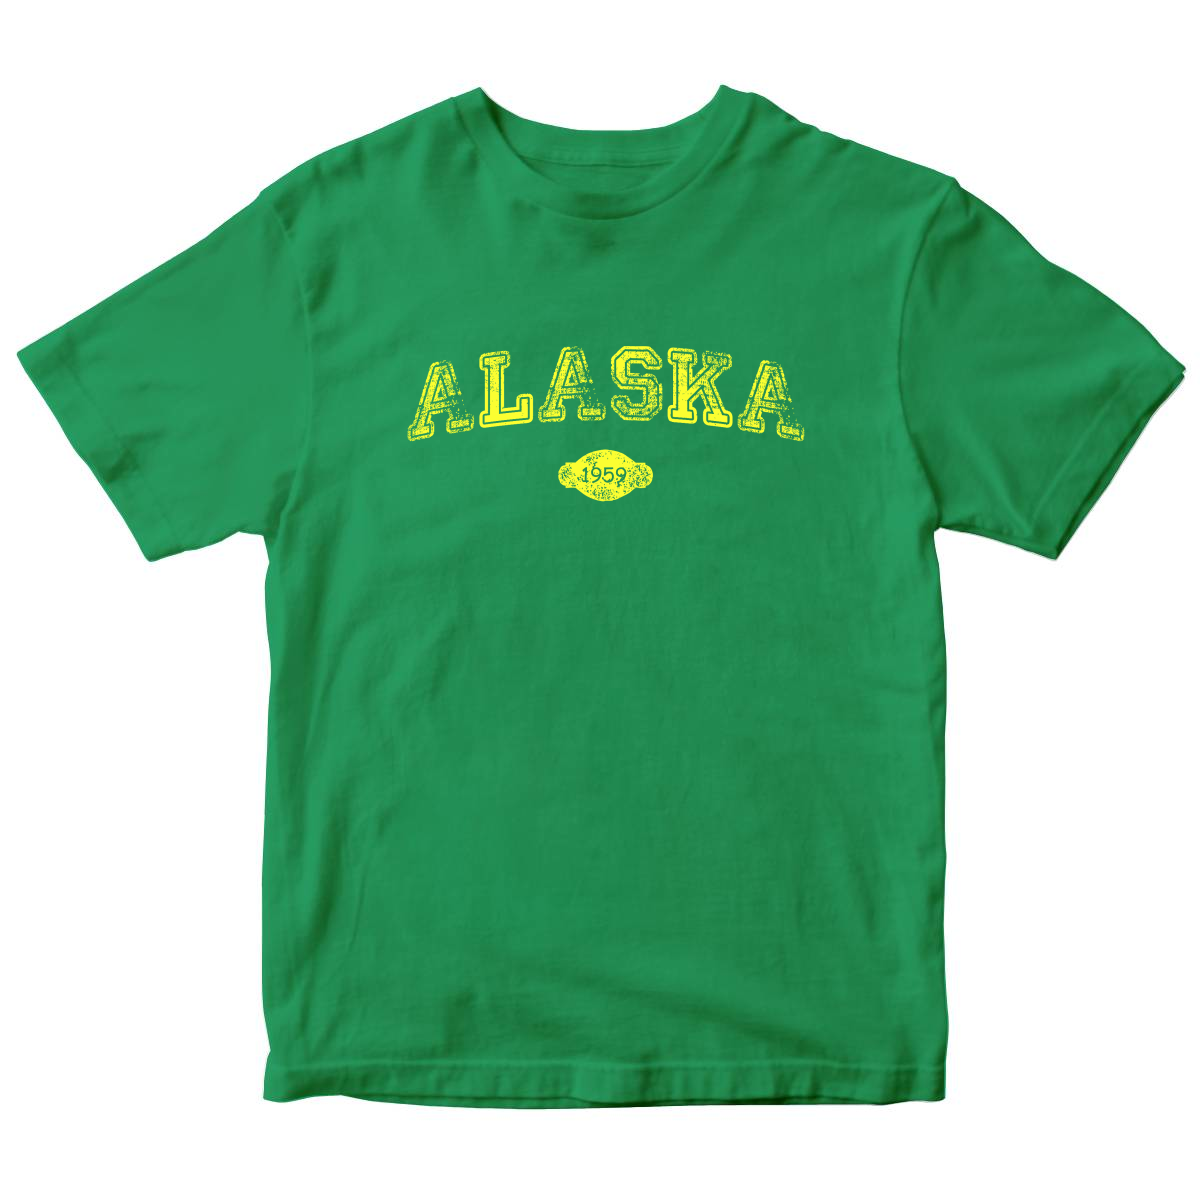 Alaska 1959 Kids T-shirt